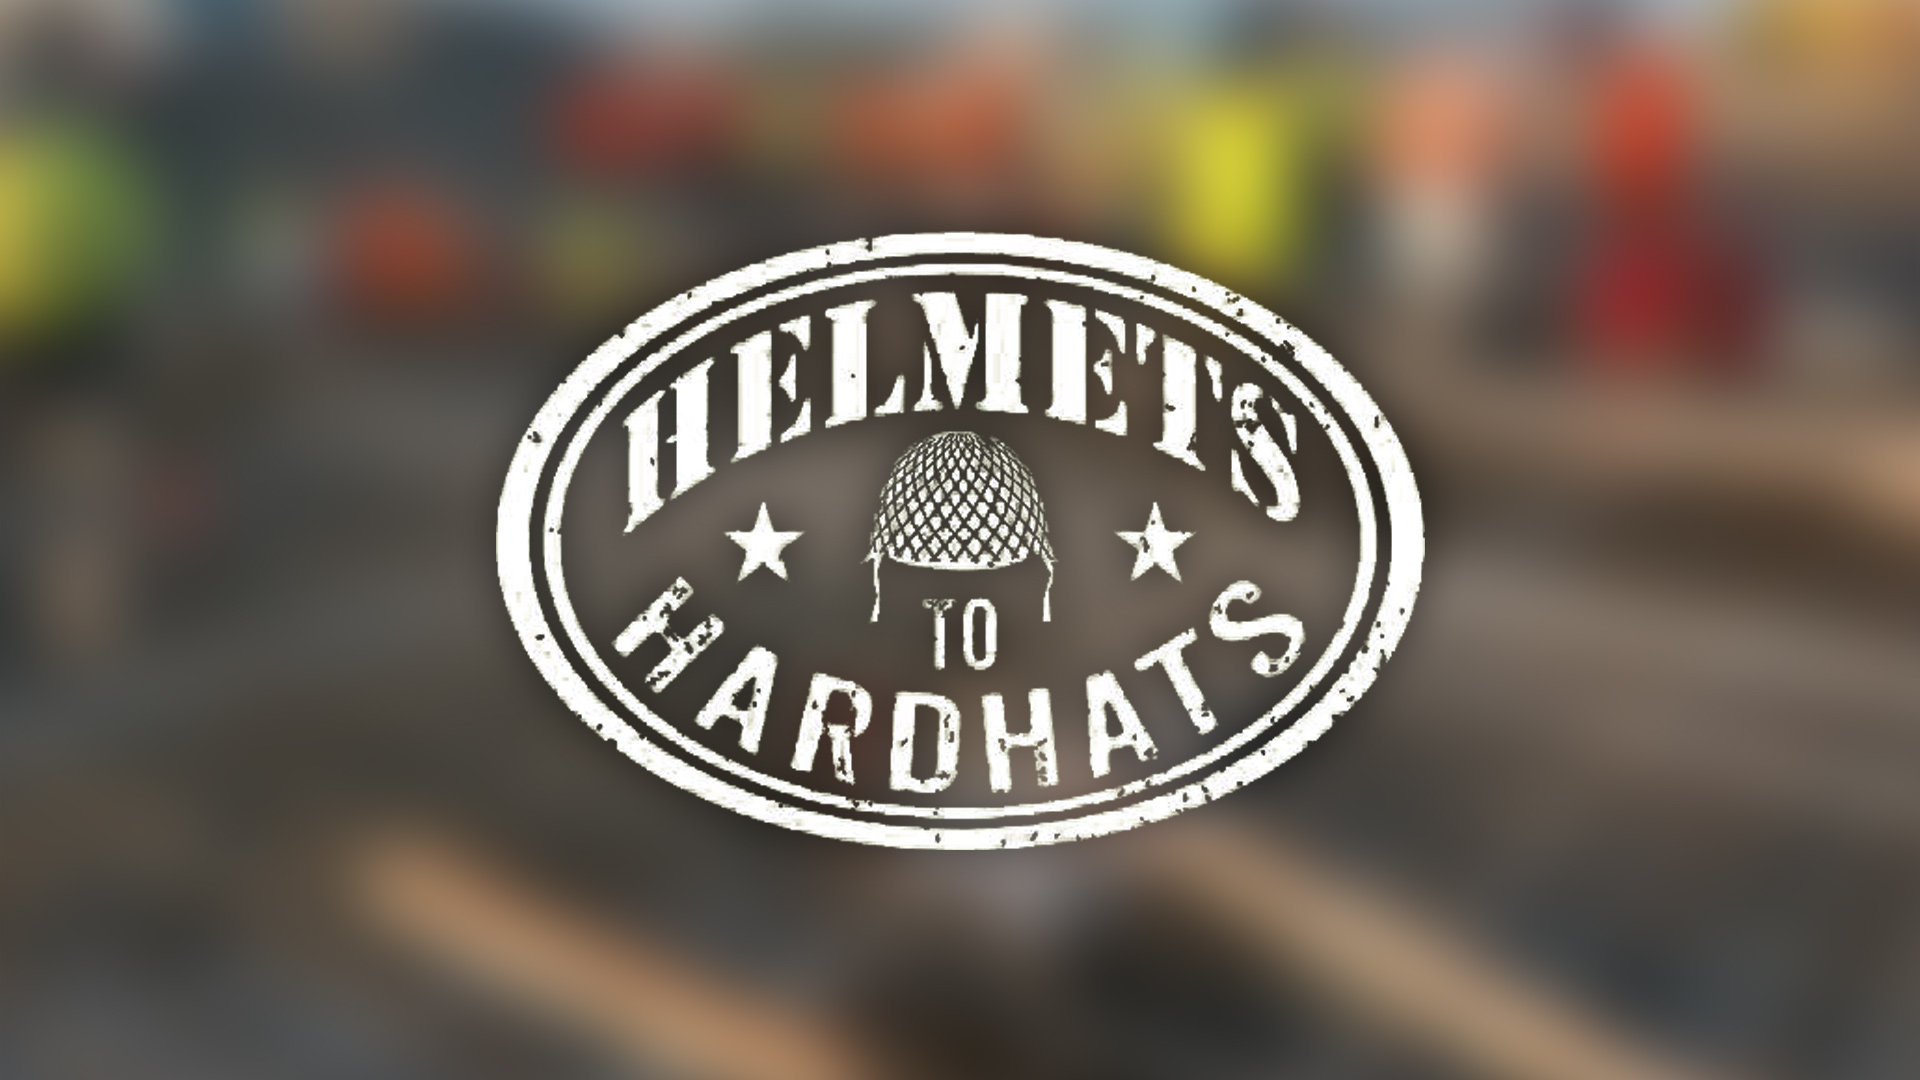 Alaska Works - Helmets to Hardhats